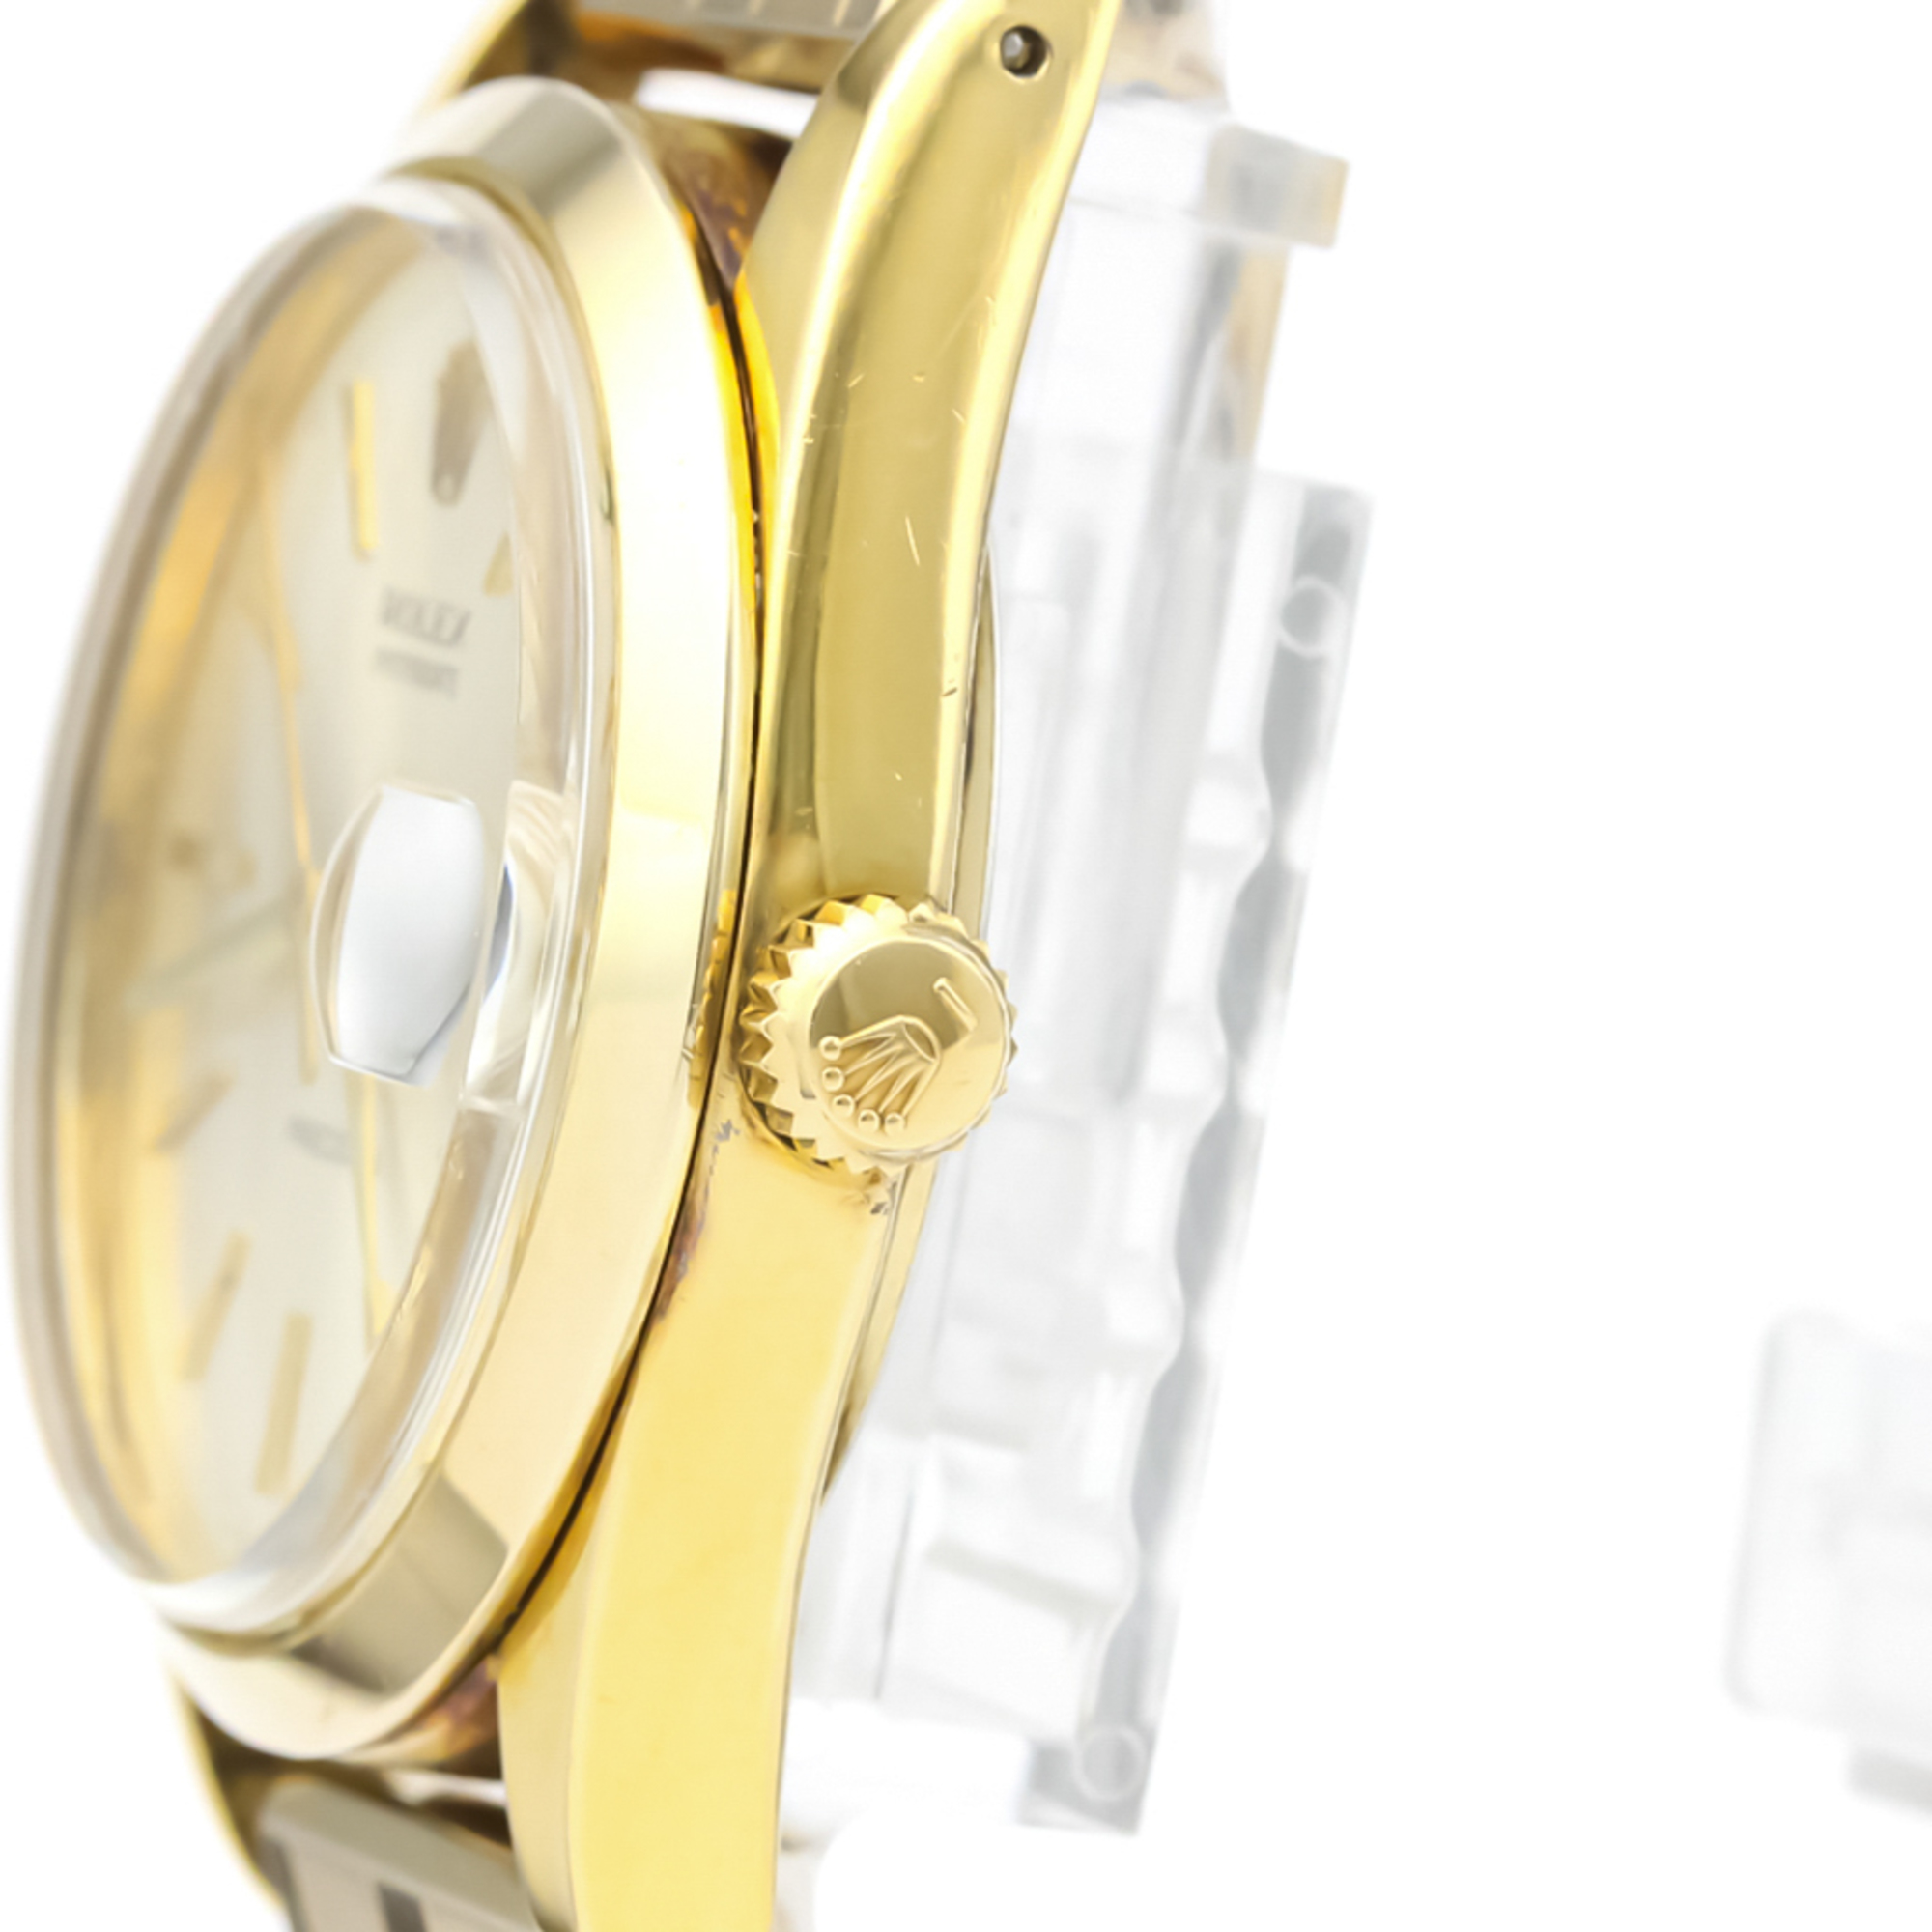 Rolex Mechanical Gold Plated Men's Dress Watch 6694